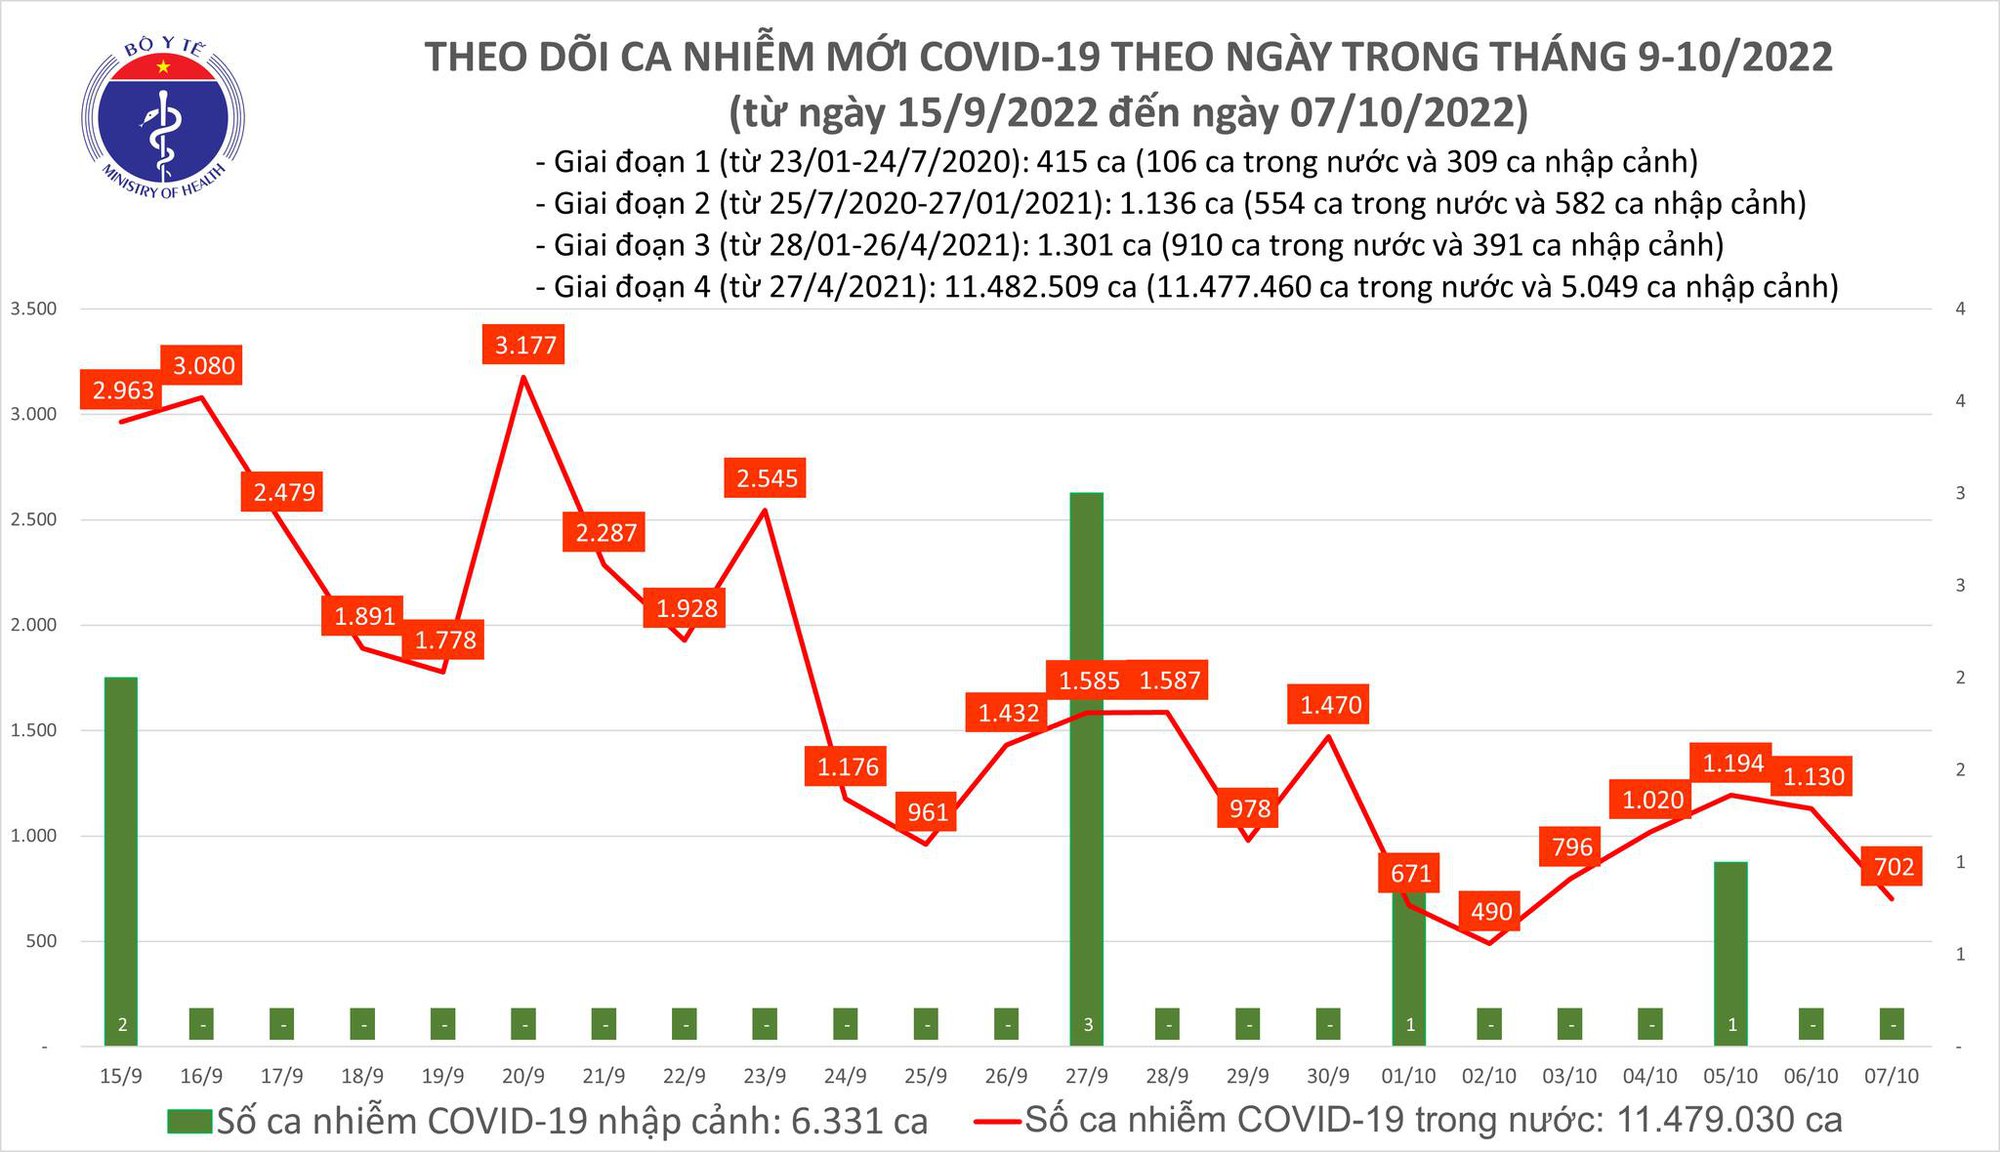 Ngày 7/10: Ca COVID-19 giảm còn 702, có 1 bệnh nhân tại Quảng Ninh ở tử vong - Ảnh 1.